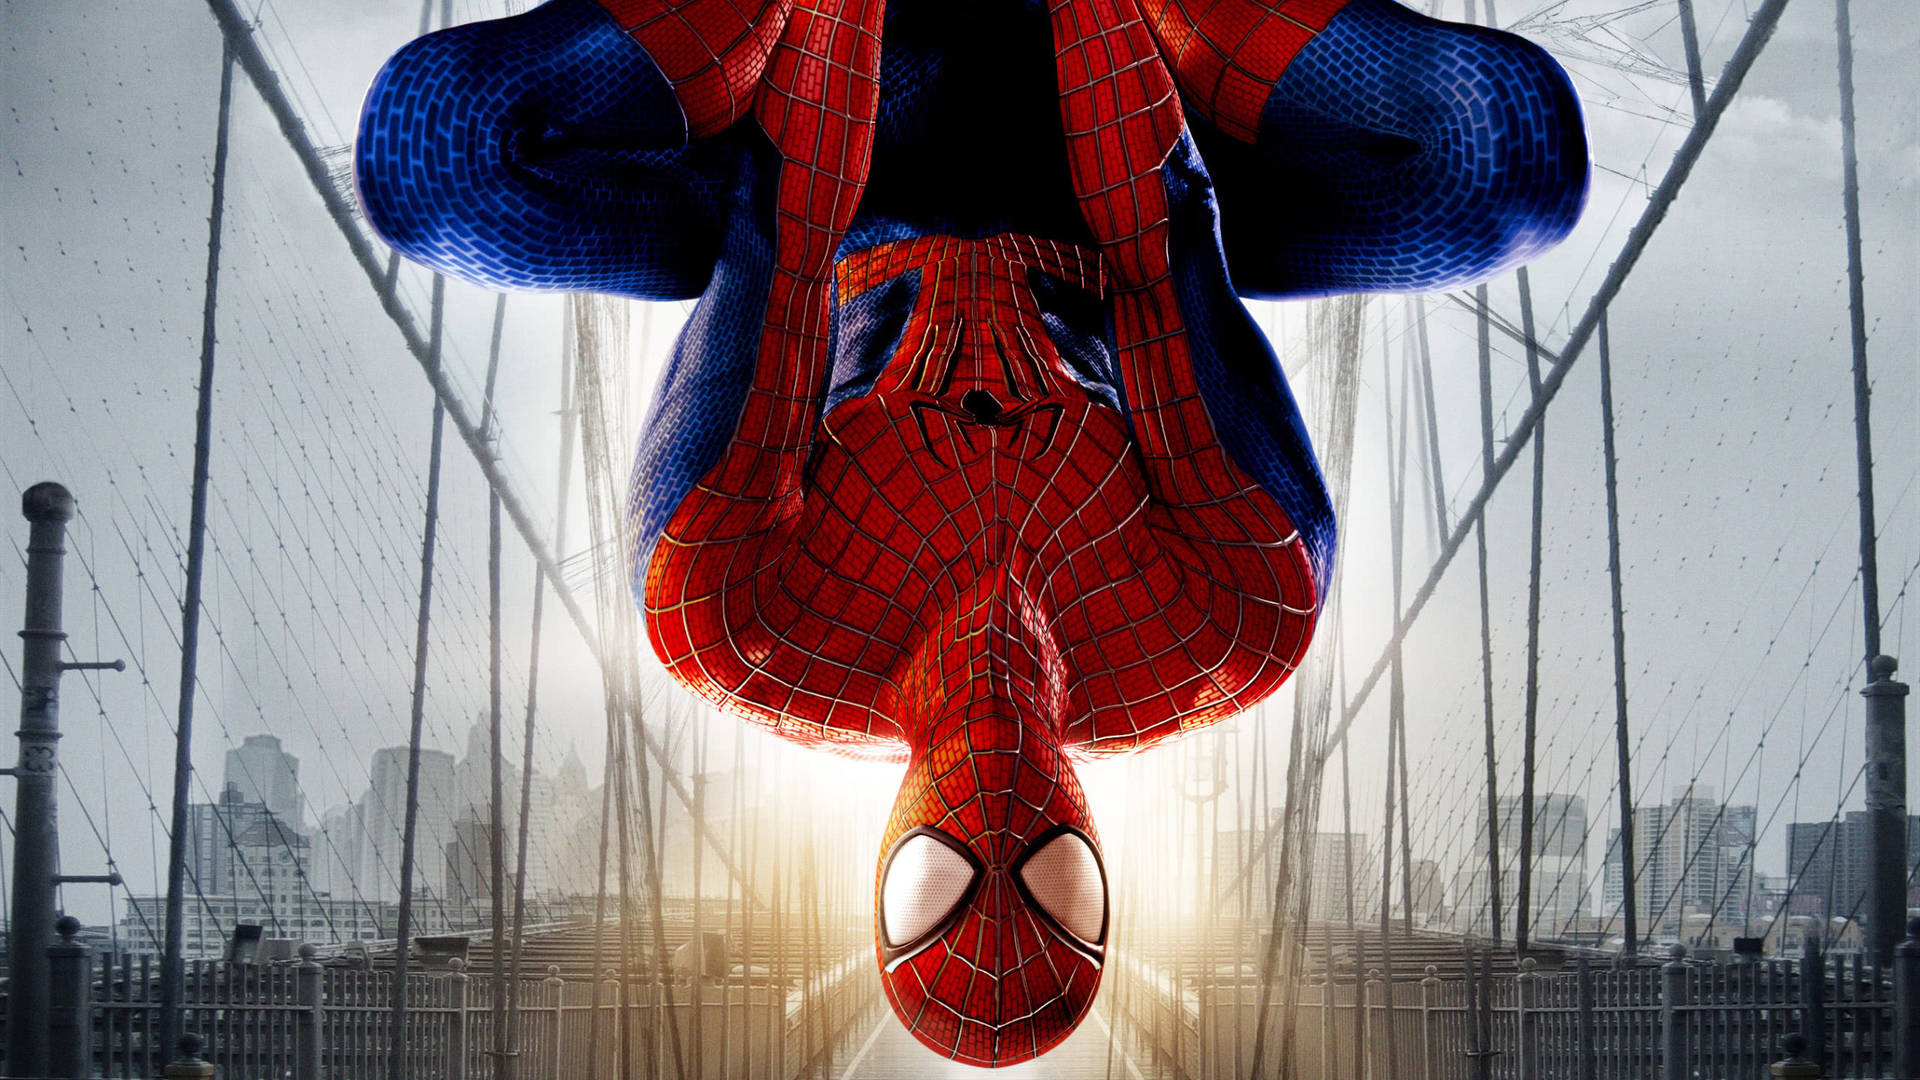 Peterparker, También Conocido Como Spider-man, El Asombroso, Se Desplaza A Toda Velocidad Por La Ciudad. Fondo de pantalla